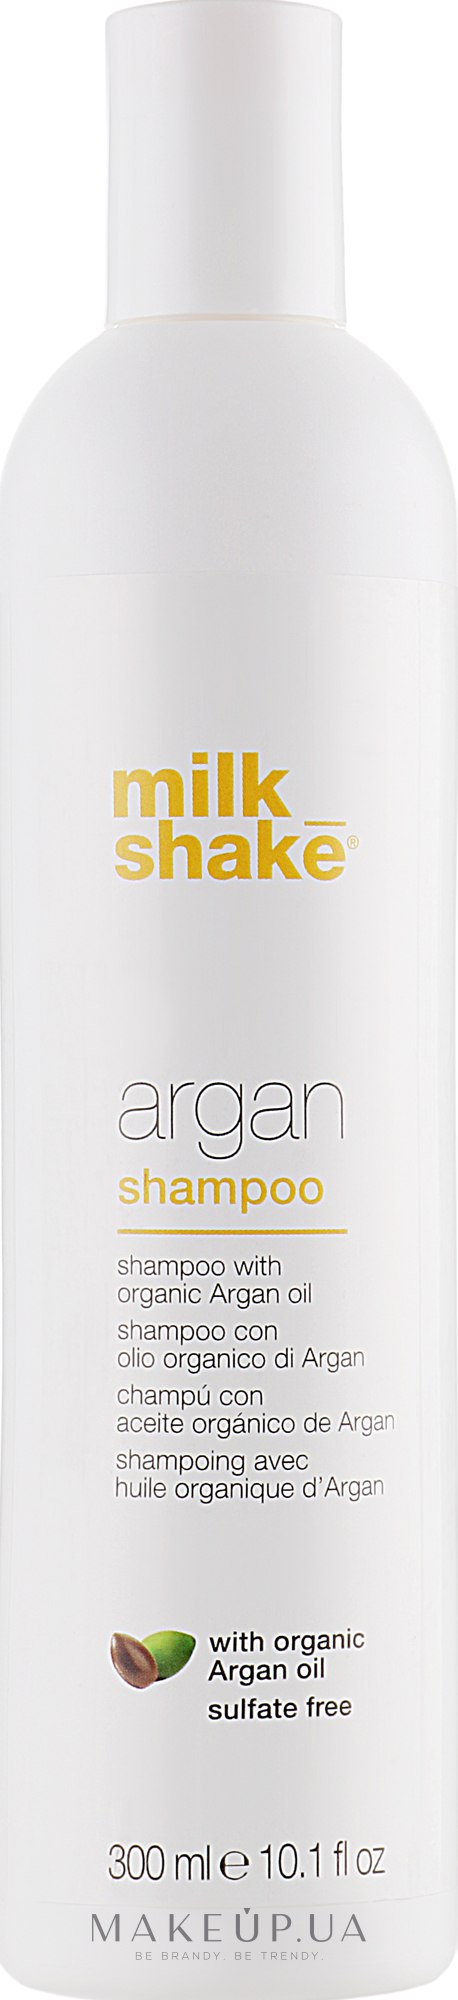 Шампунь для волосся з олією арганії - Milk_Shake Argan Hair Shampoo — фото 300ml